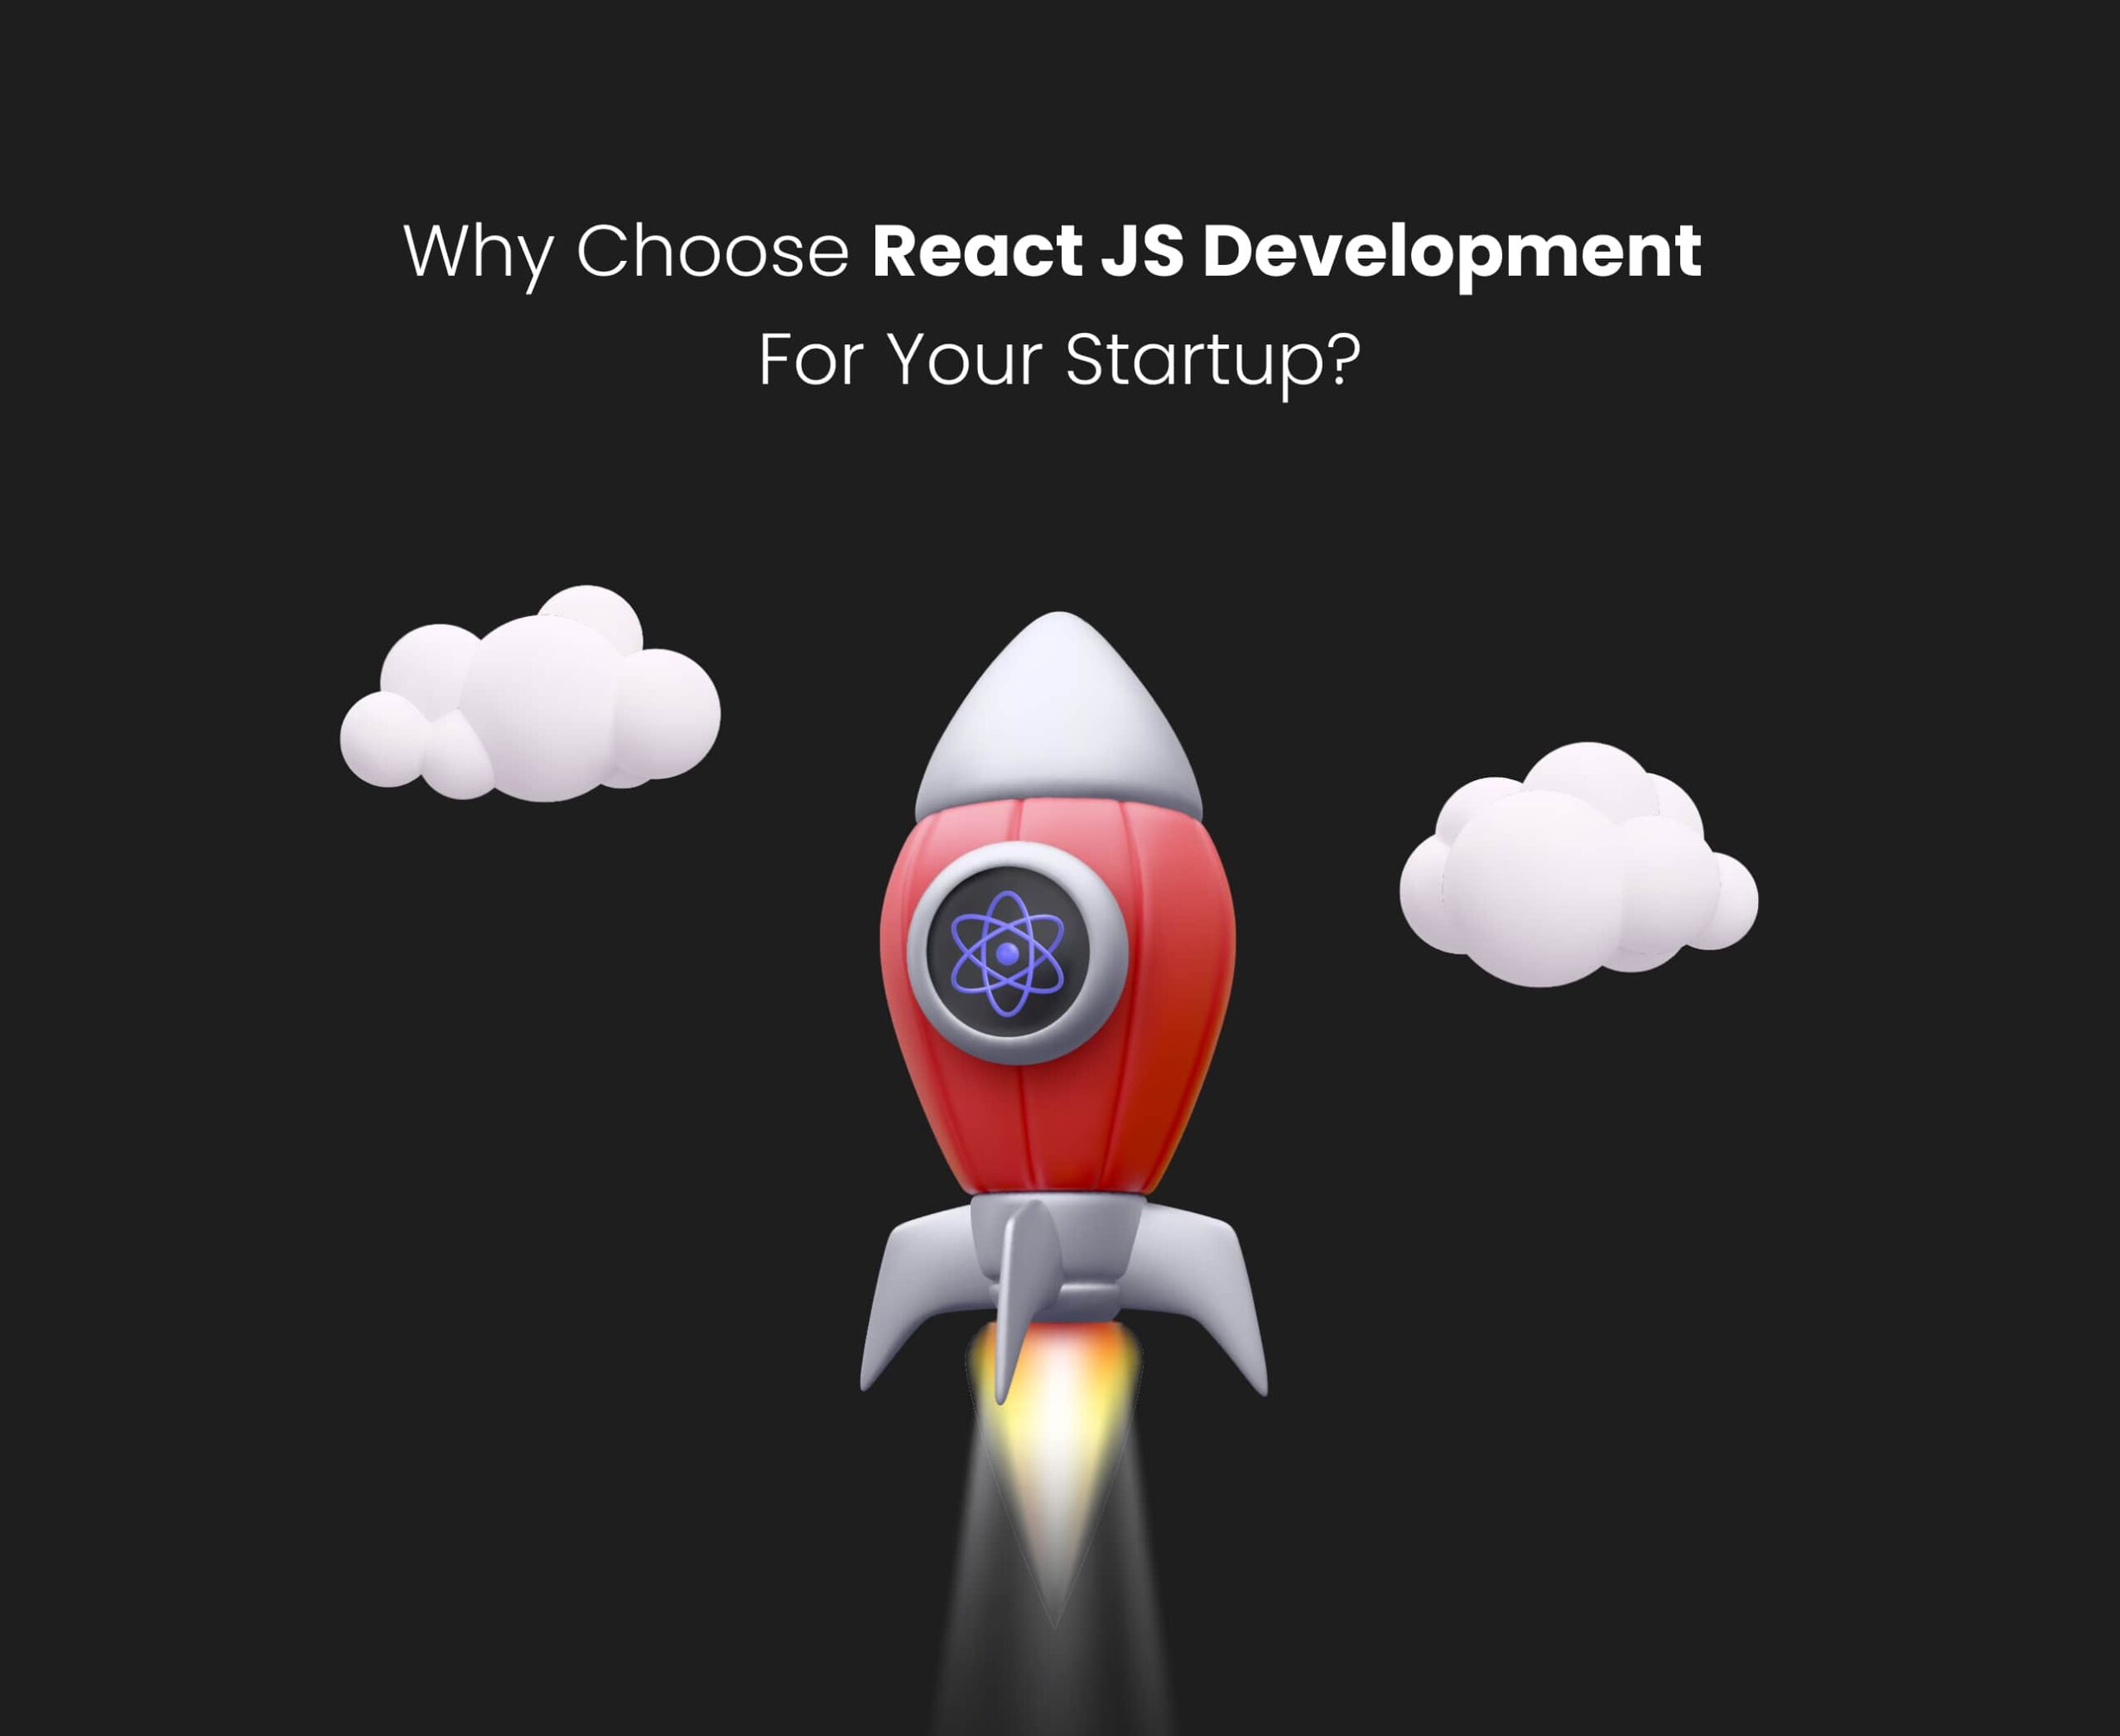 Why Choose Reactjs Development for Startup